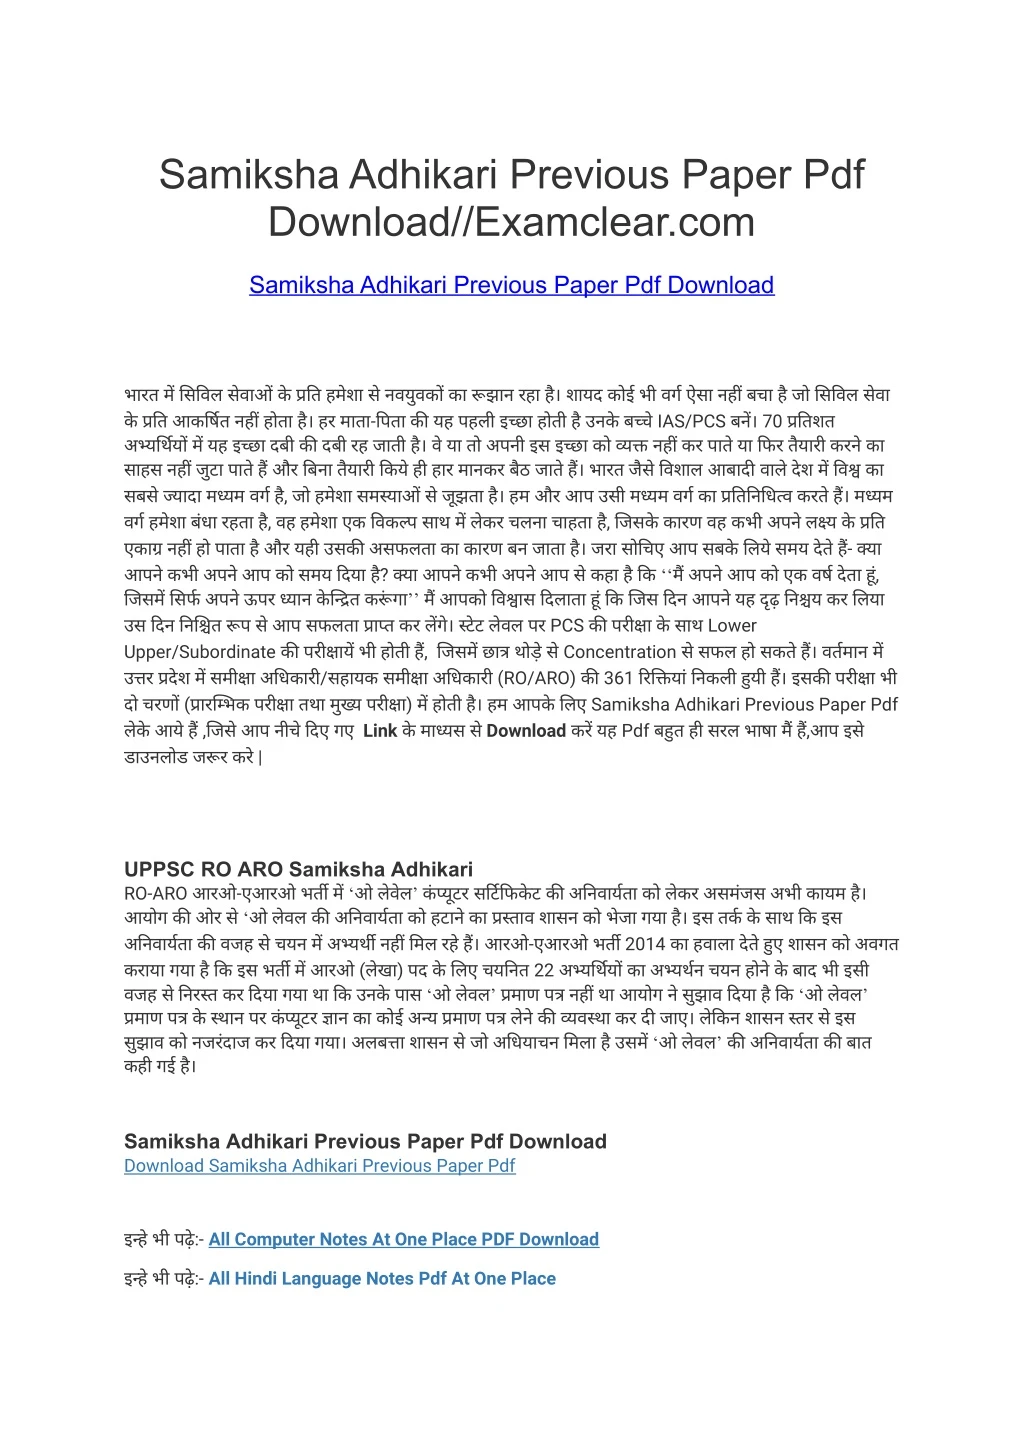 samiksha adhikari previous paper pdf download